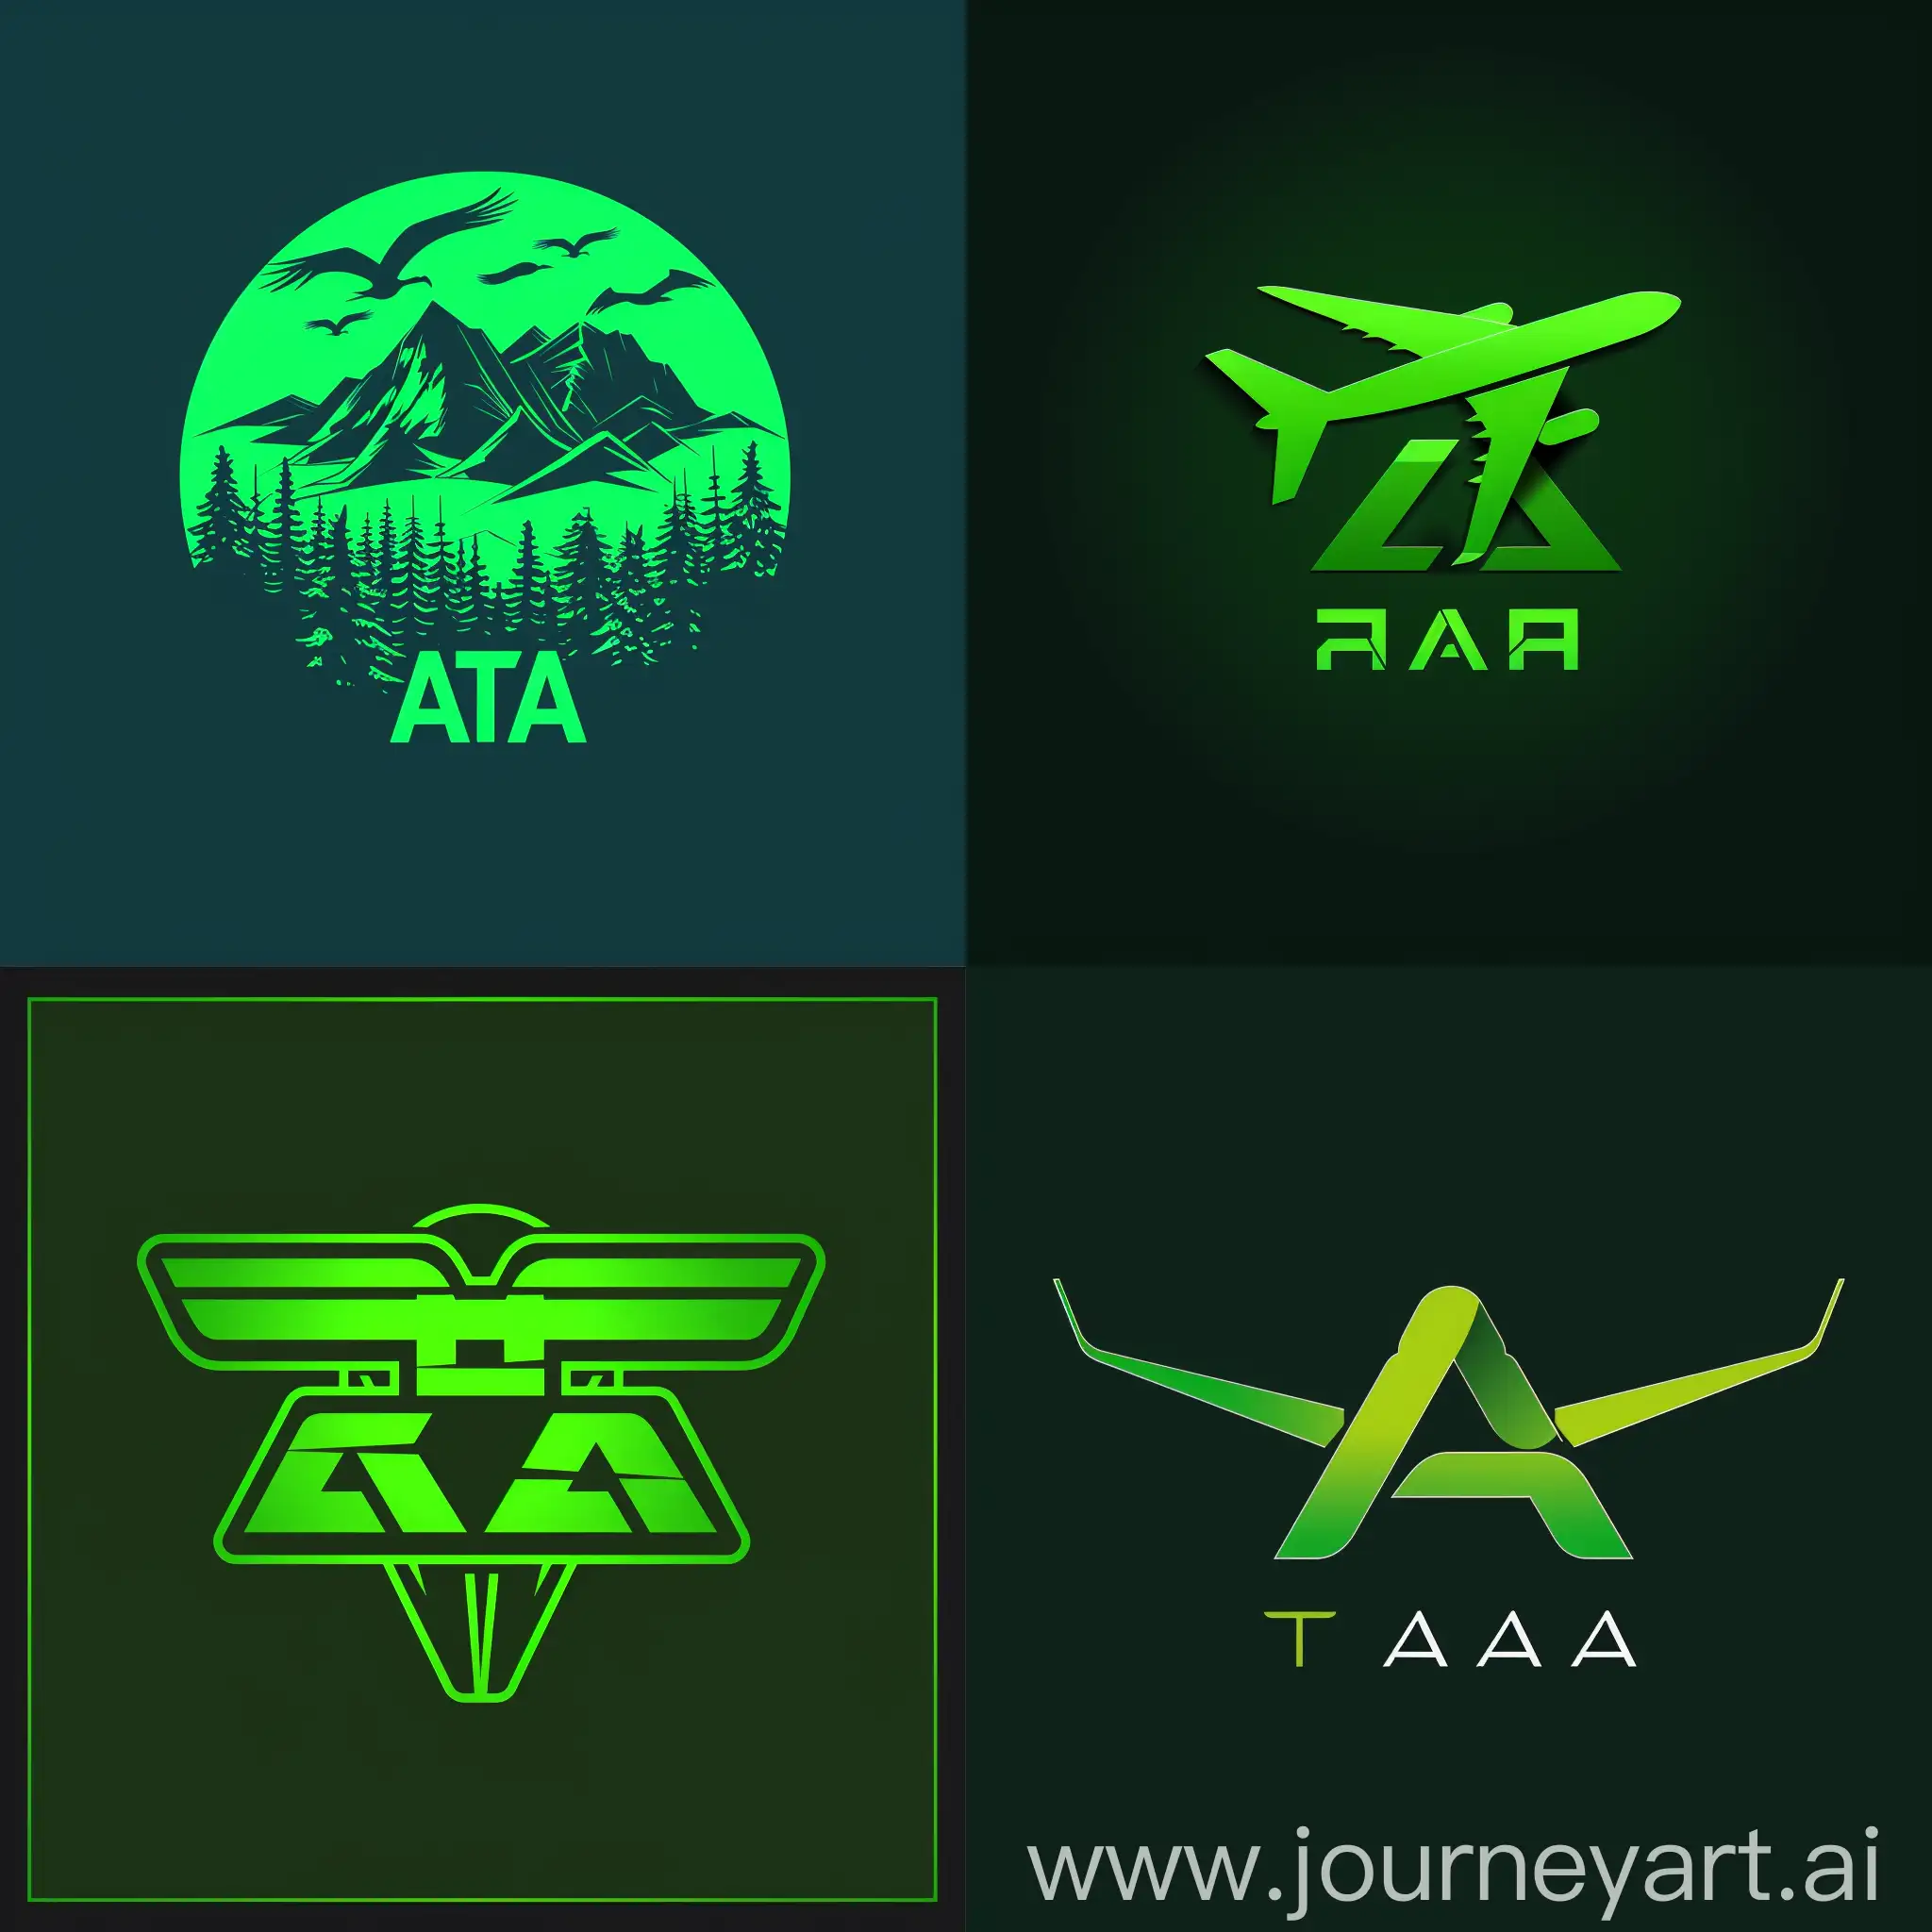 green logo with ATA name